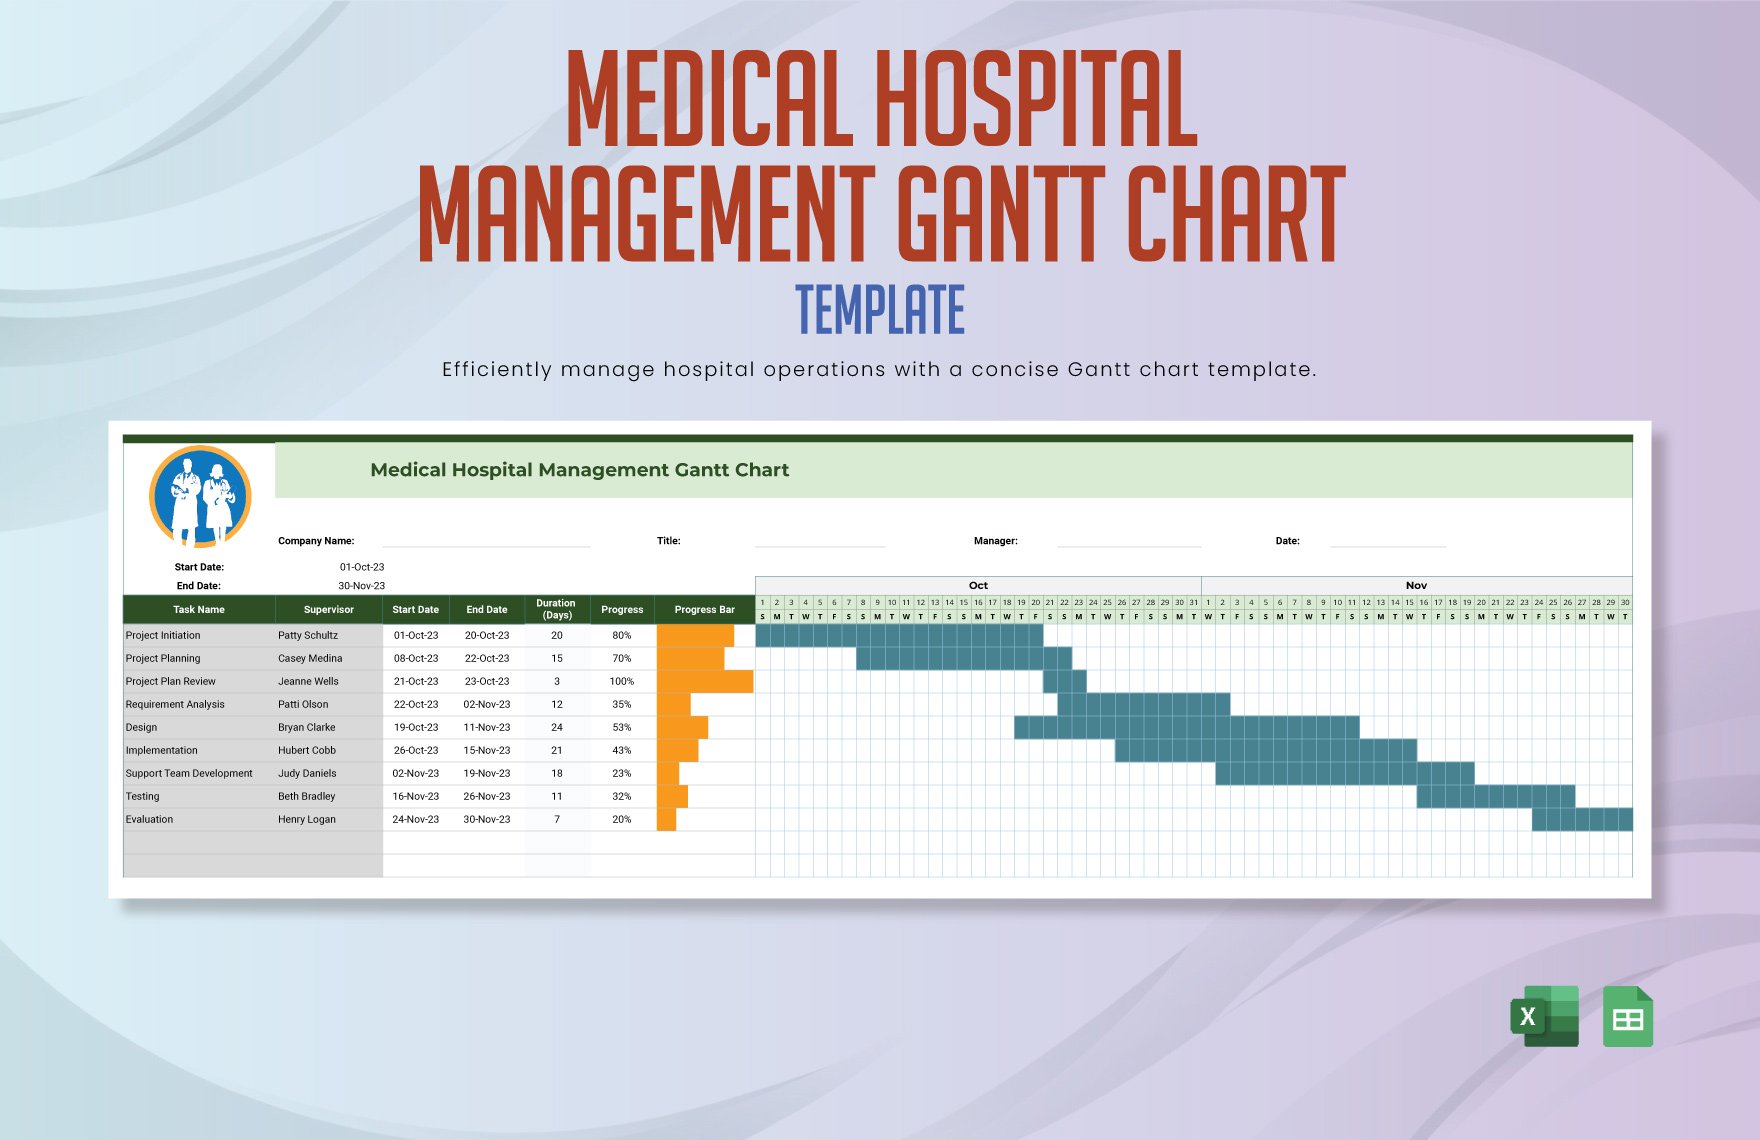 Medical Hospital Management Gantt Chart Template in Excel, Google Sheets